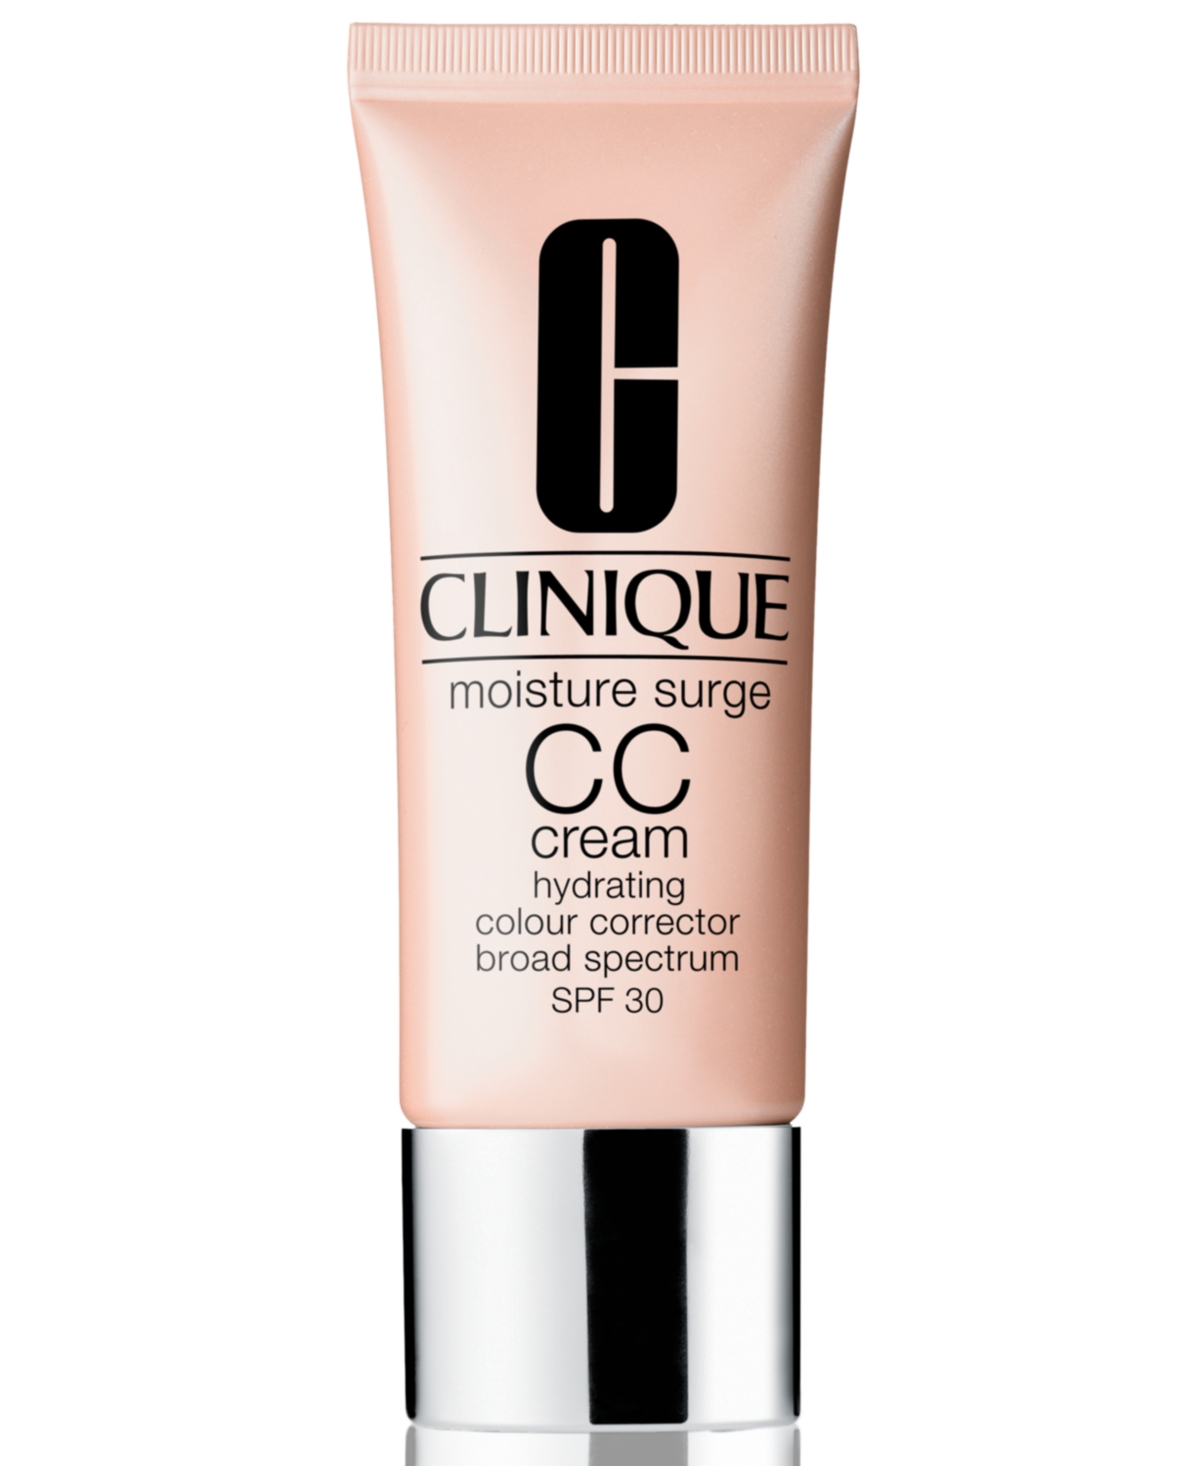 Clinique Moisture Surge Cc Cream Colour Correcting Skin Protector Broad Spectrum Spf 30, 1.4 oz In Medium Deep